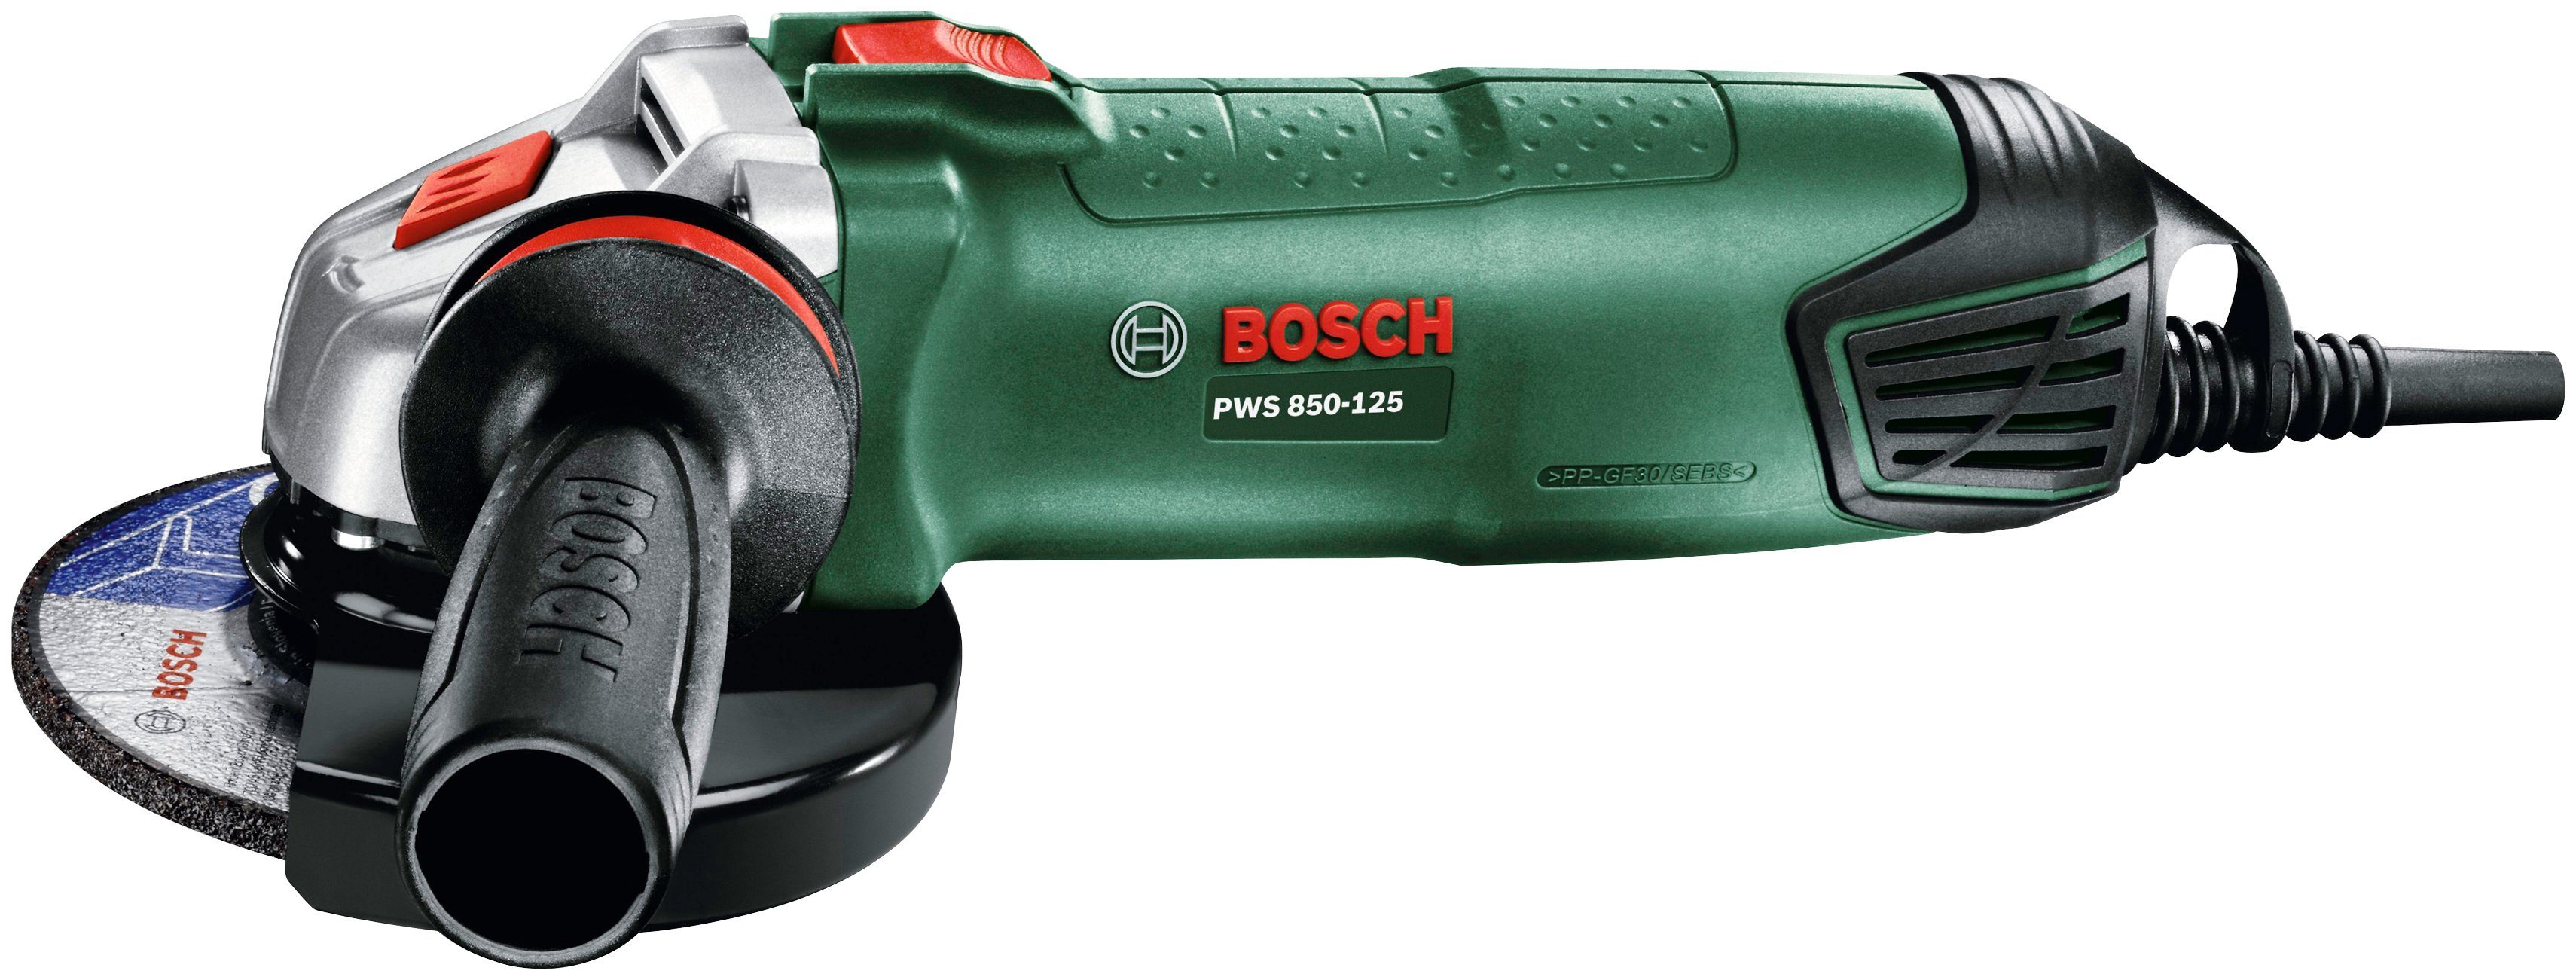 Home & Bosch PWS 850-125 Garden Winkelschleifer